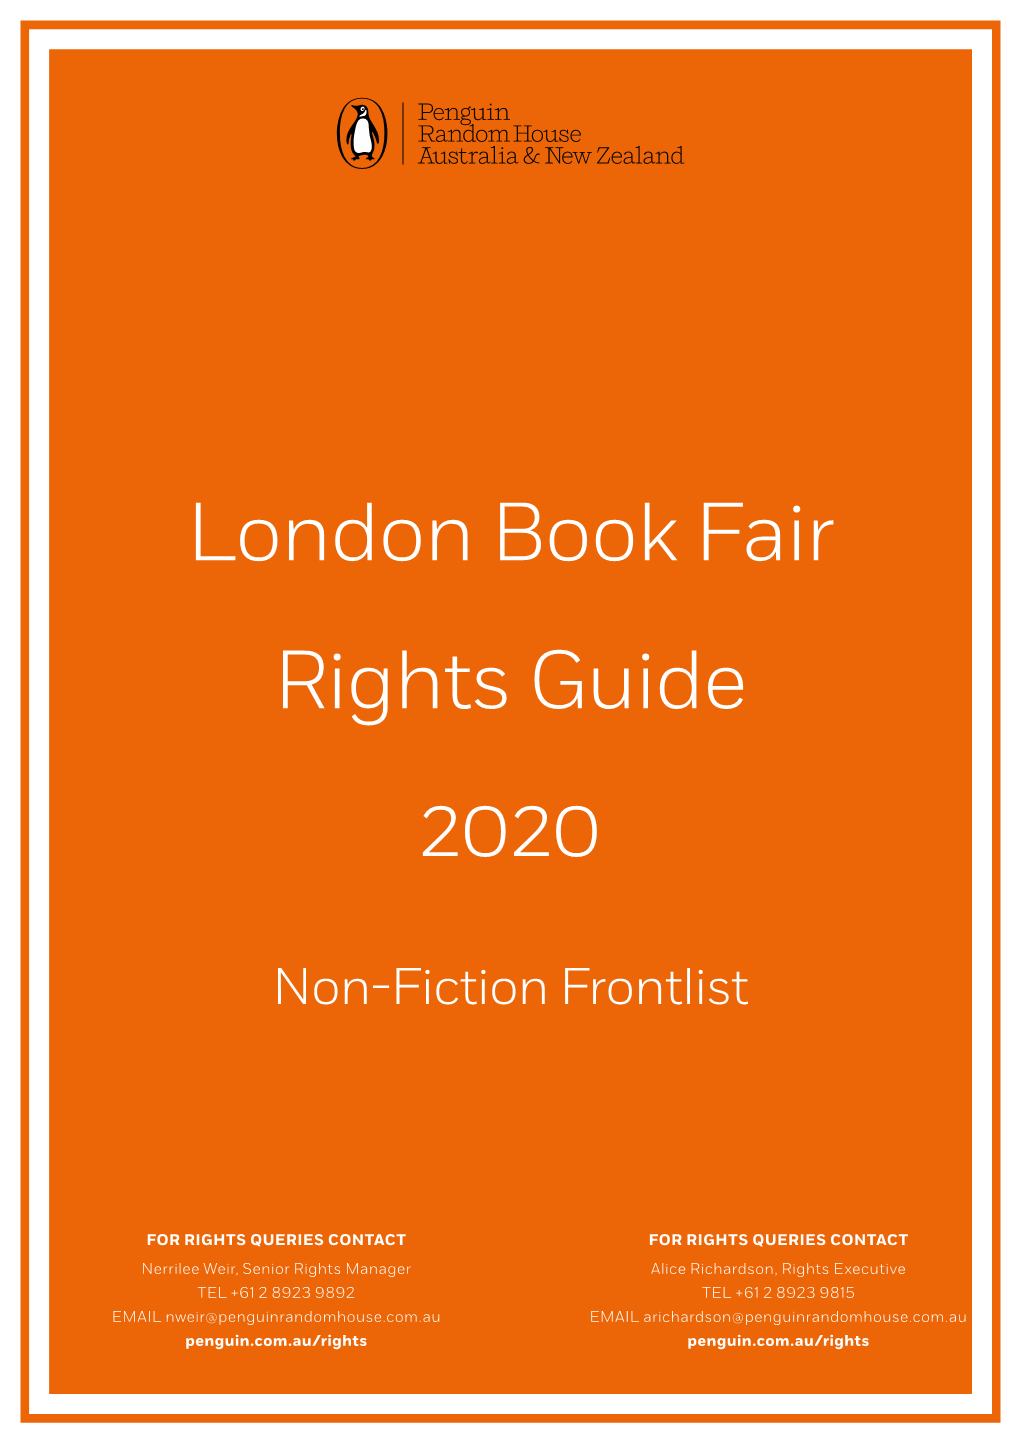 London Book Fair Rights Guide 2020